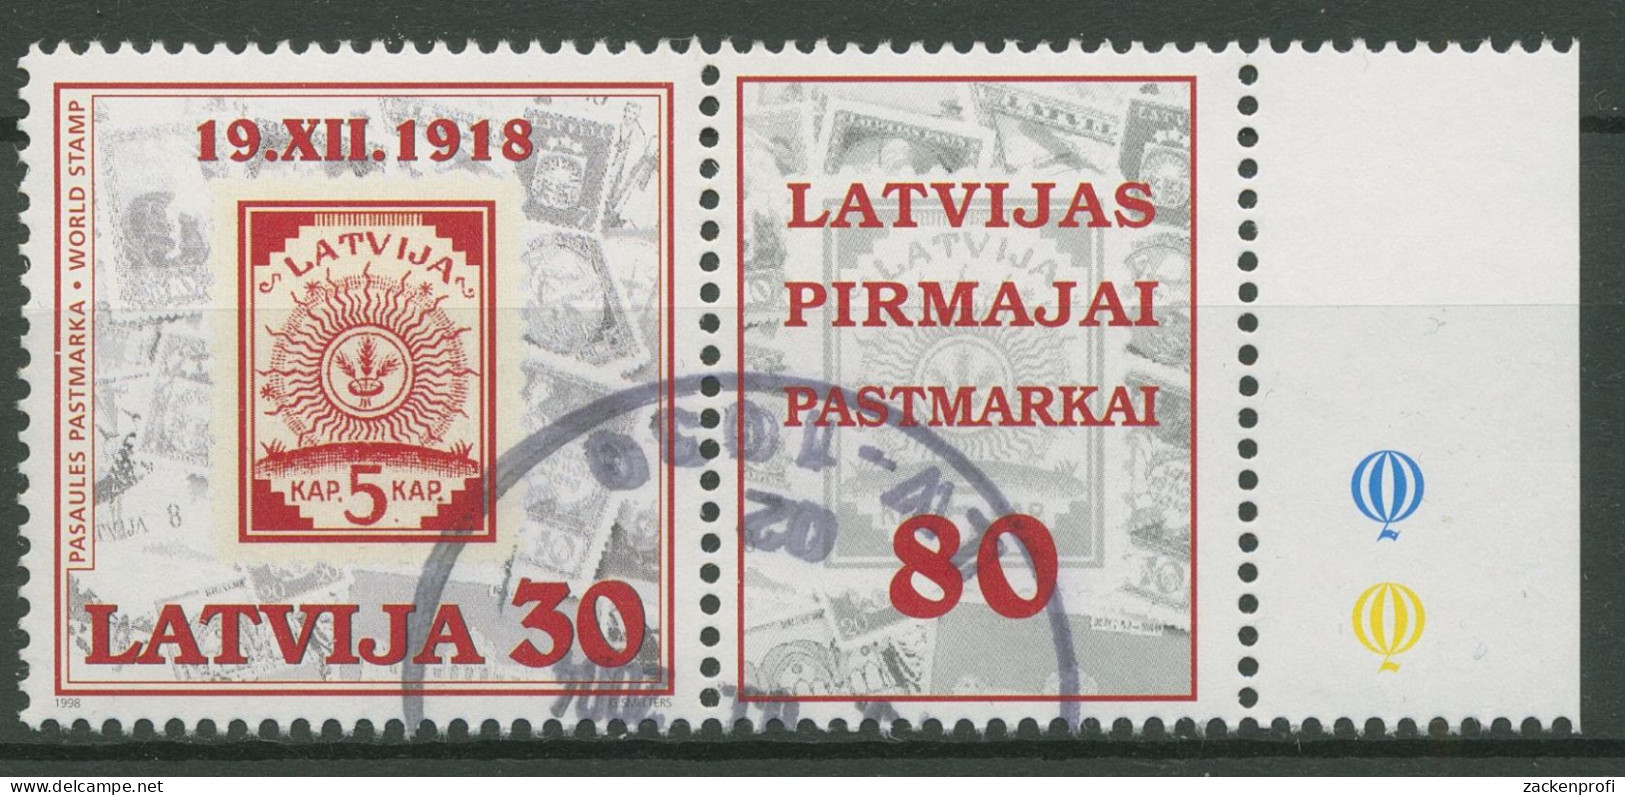 Lettland 1998 80 Jahre Briefmarken MiNr.2 Ähren Im Sonnenkreis 487 Zf Gestempelt - Lettonia